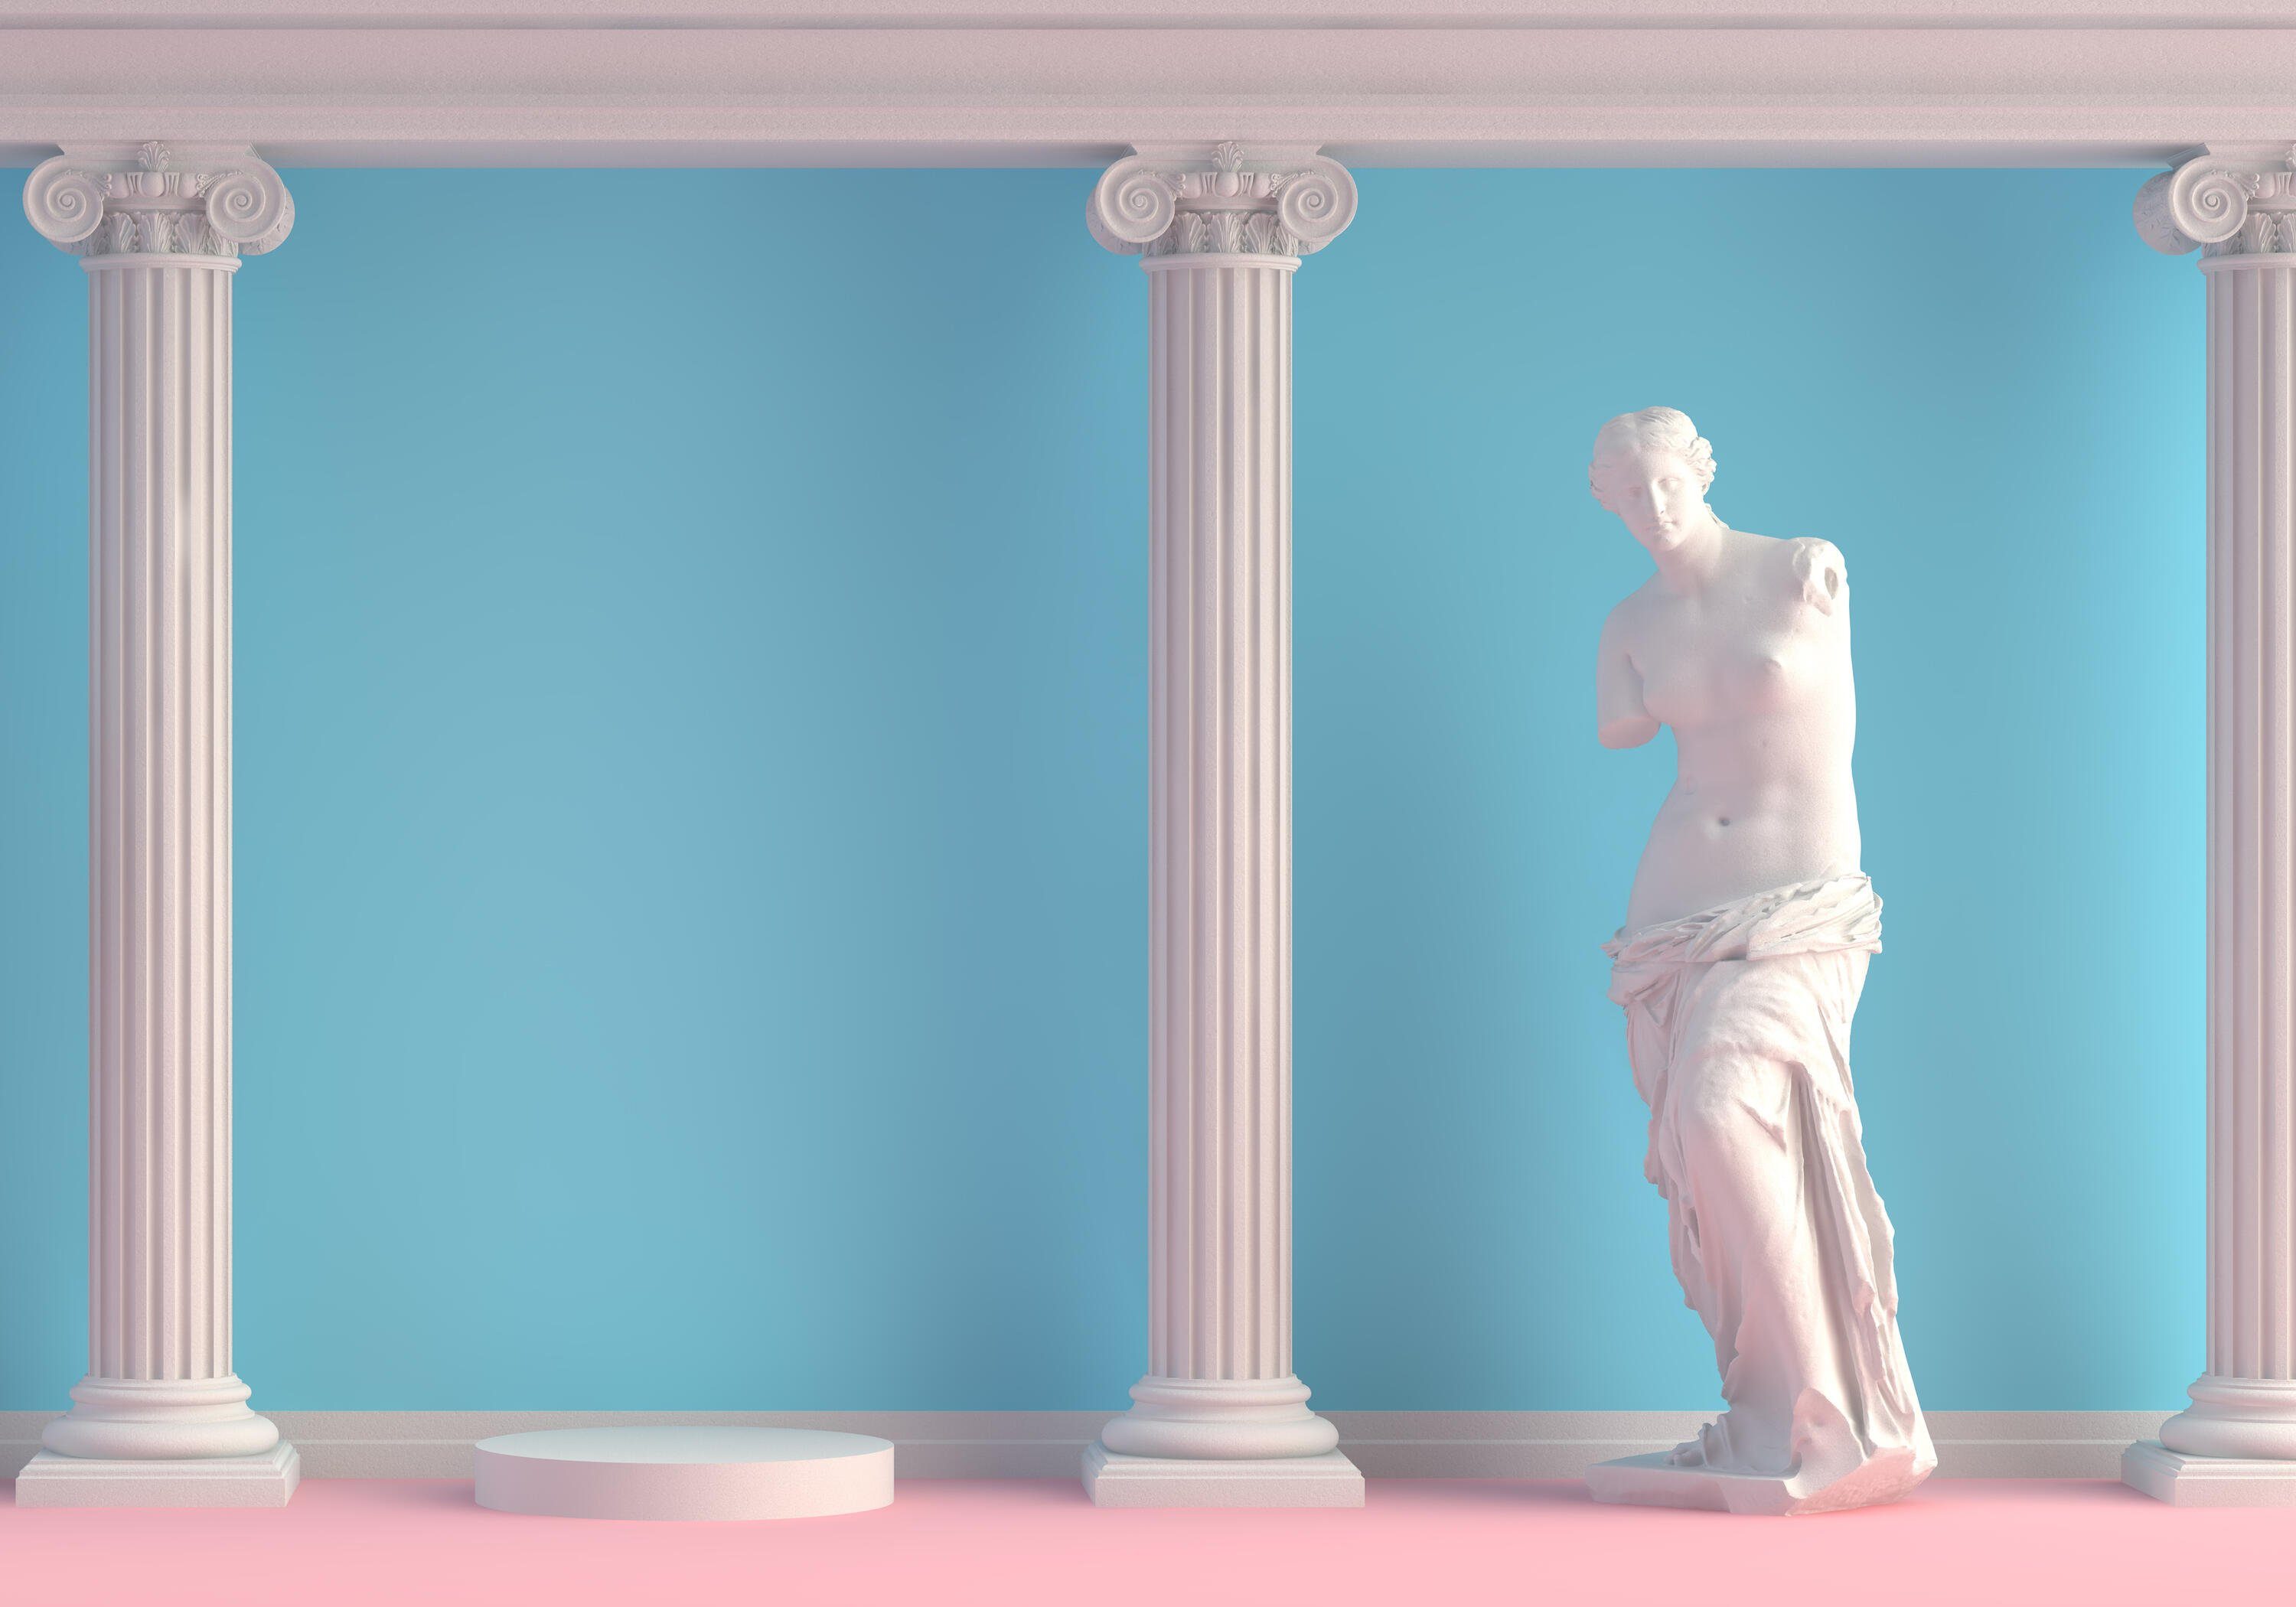 wandmotiv24 Fototapete Griechische Statue Frau Säulen, glatt, Wandtapete, Motivtapete, matt, Vliestapete